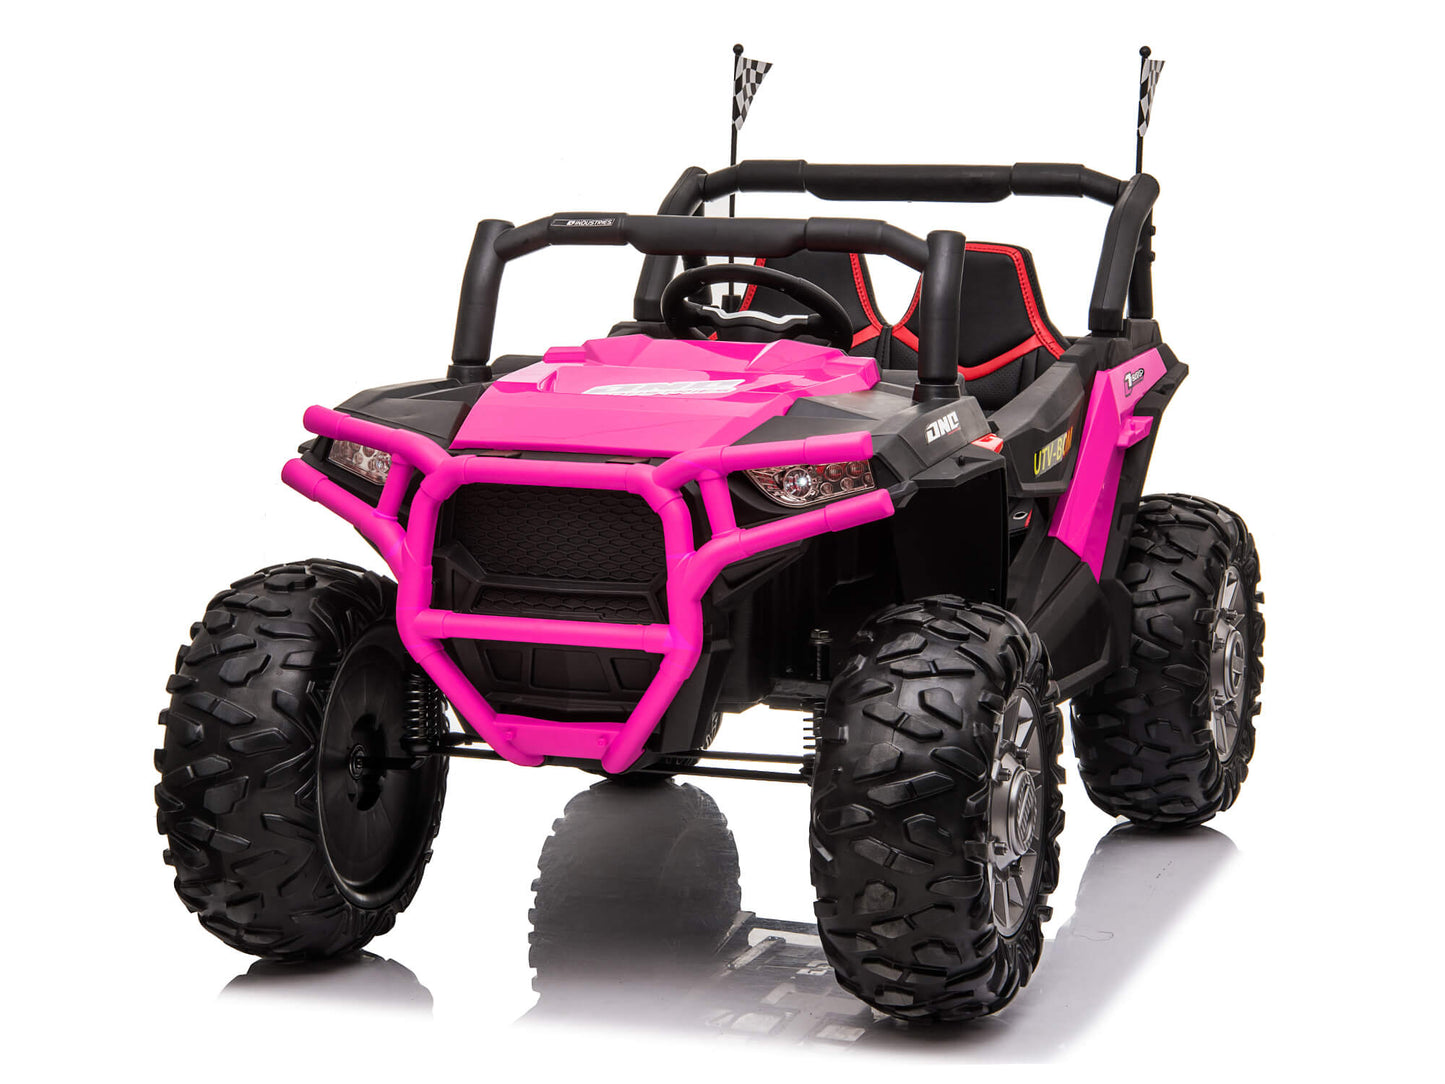 Bom Adventure UTV 24V Kids Off-Road Ride On Buggy - Pink